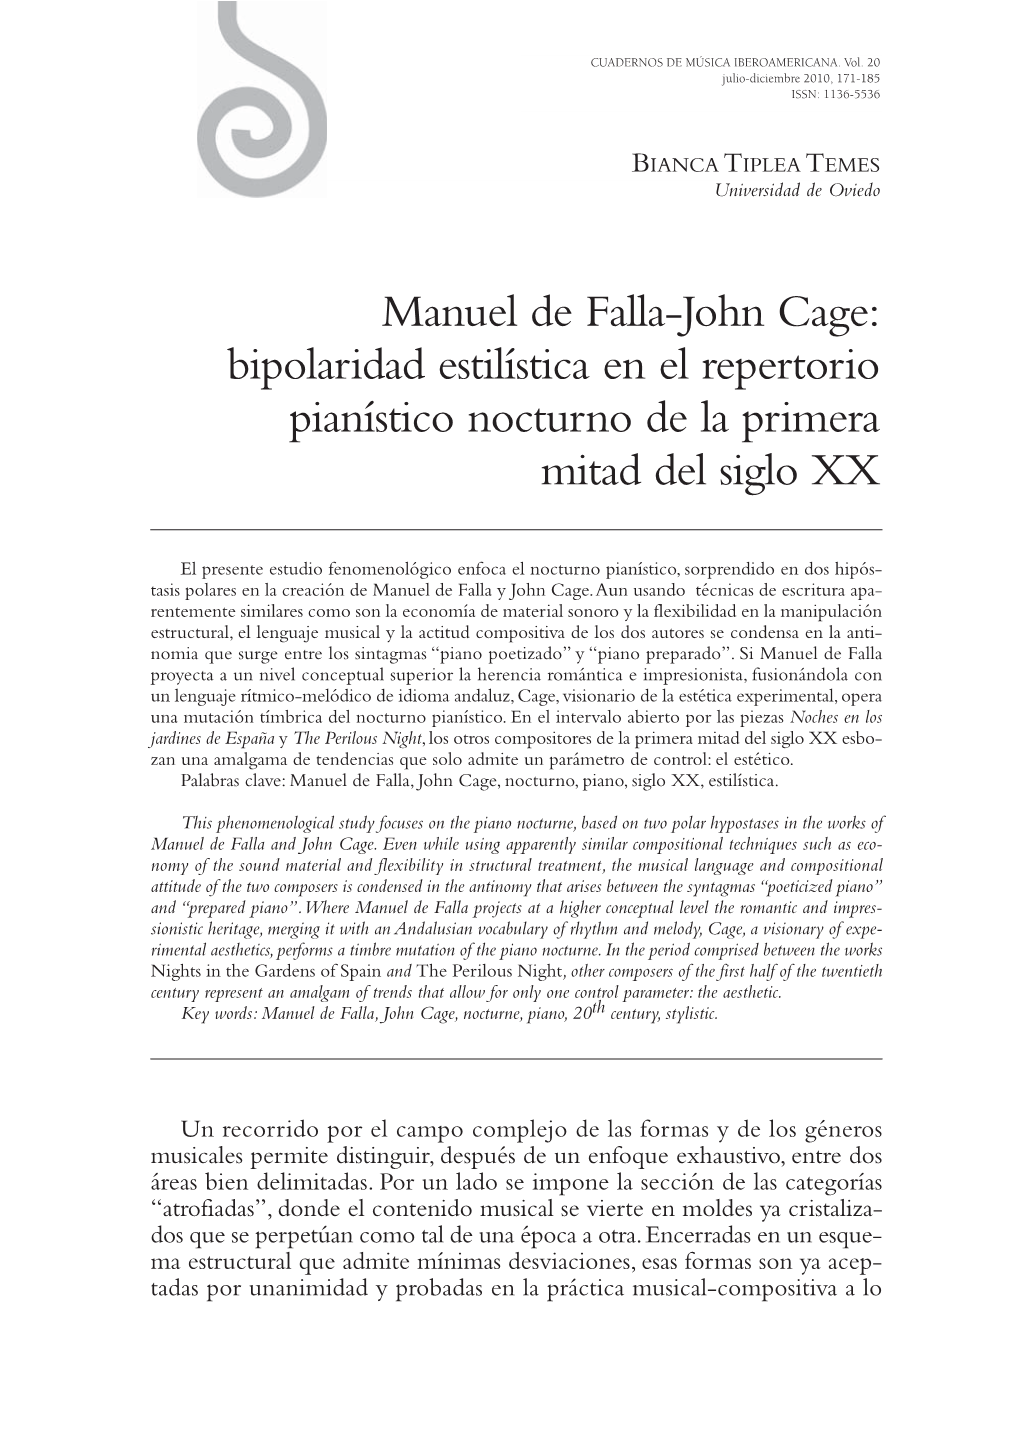 Manuel De Falla-John Cage: Bipolaridad Estilística En El Repertorio Pianístico Nocturno De La Primera Mitad Del Siglo XX